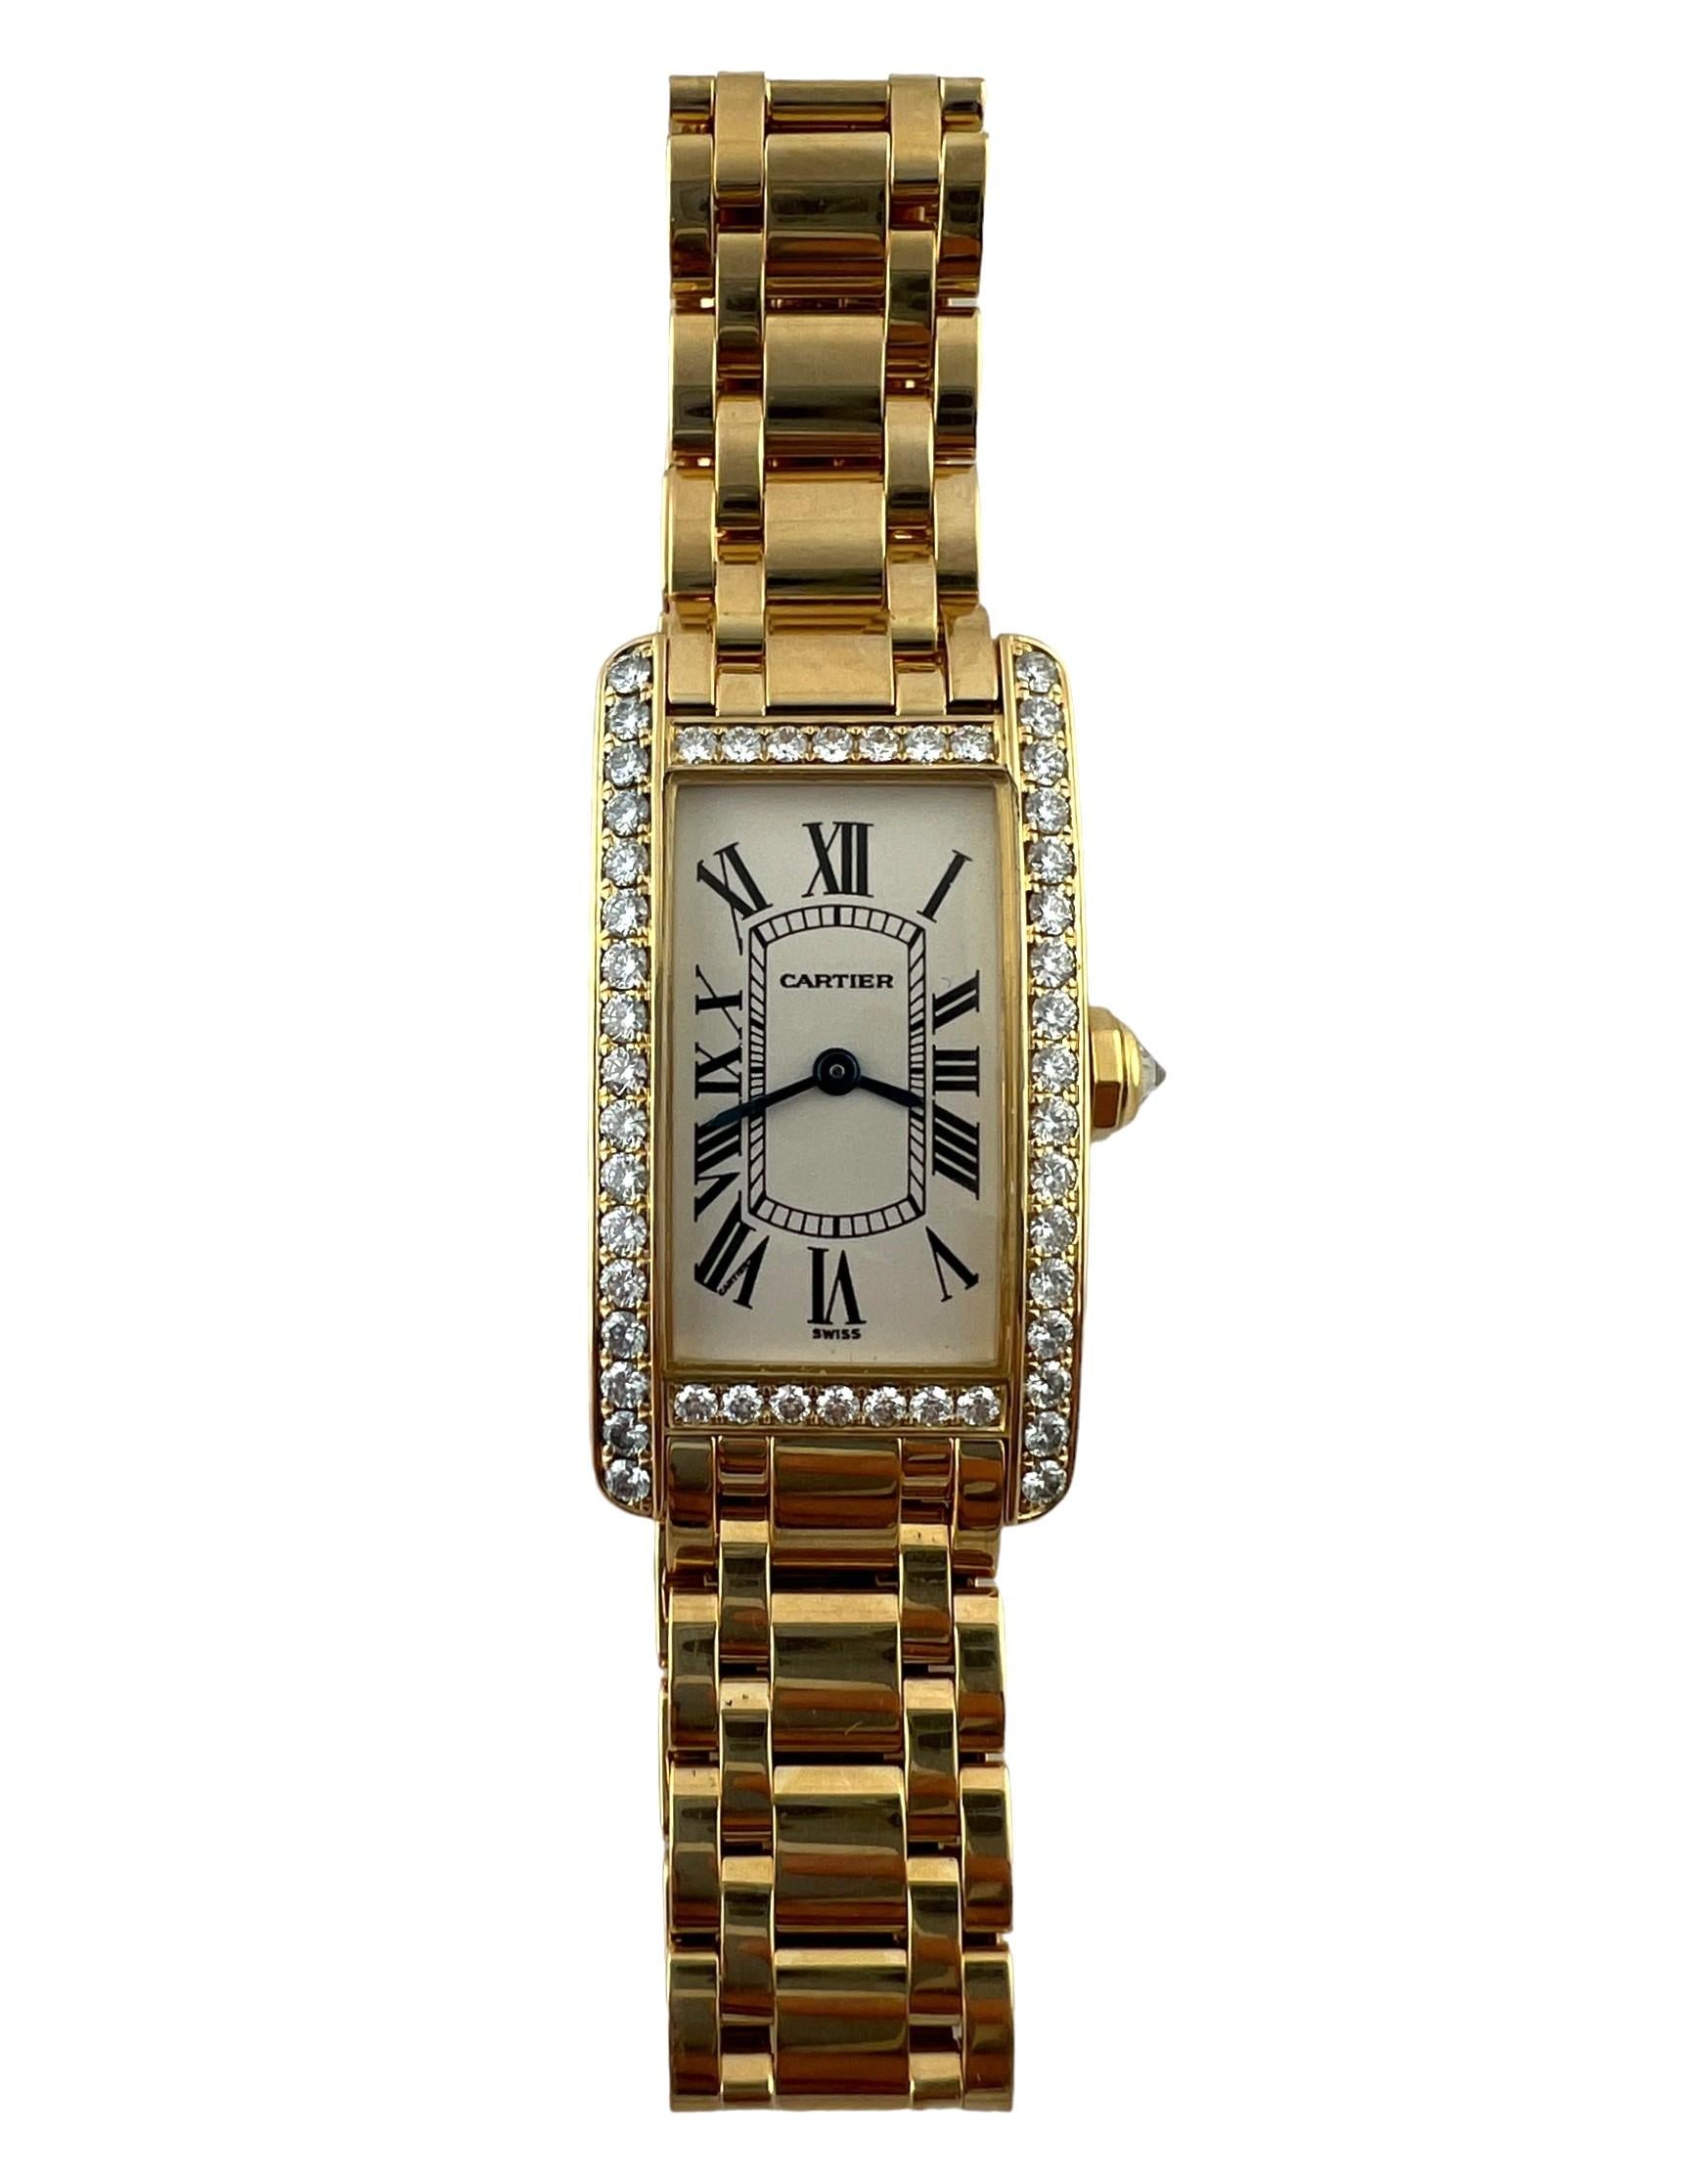 Cartier 18K Gelbgold Diamant Tank Americaine Uhr

Modell: 1710
Seriennummer: SM12546

Diese elegante Uhr von Cartier ist aus 18 Karat Gelbgold gefertigt und mit einer diamantenen Lünette und Krone versehen.

Das Gehäuse der Uhr ist 34,8mm x 19mm x